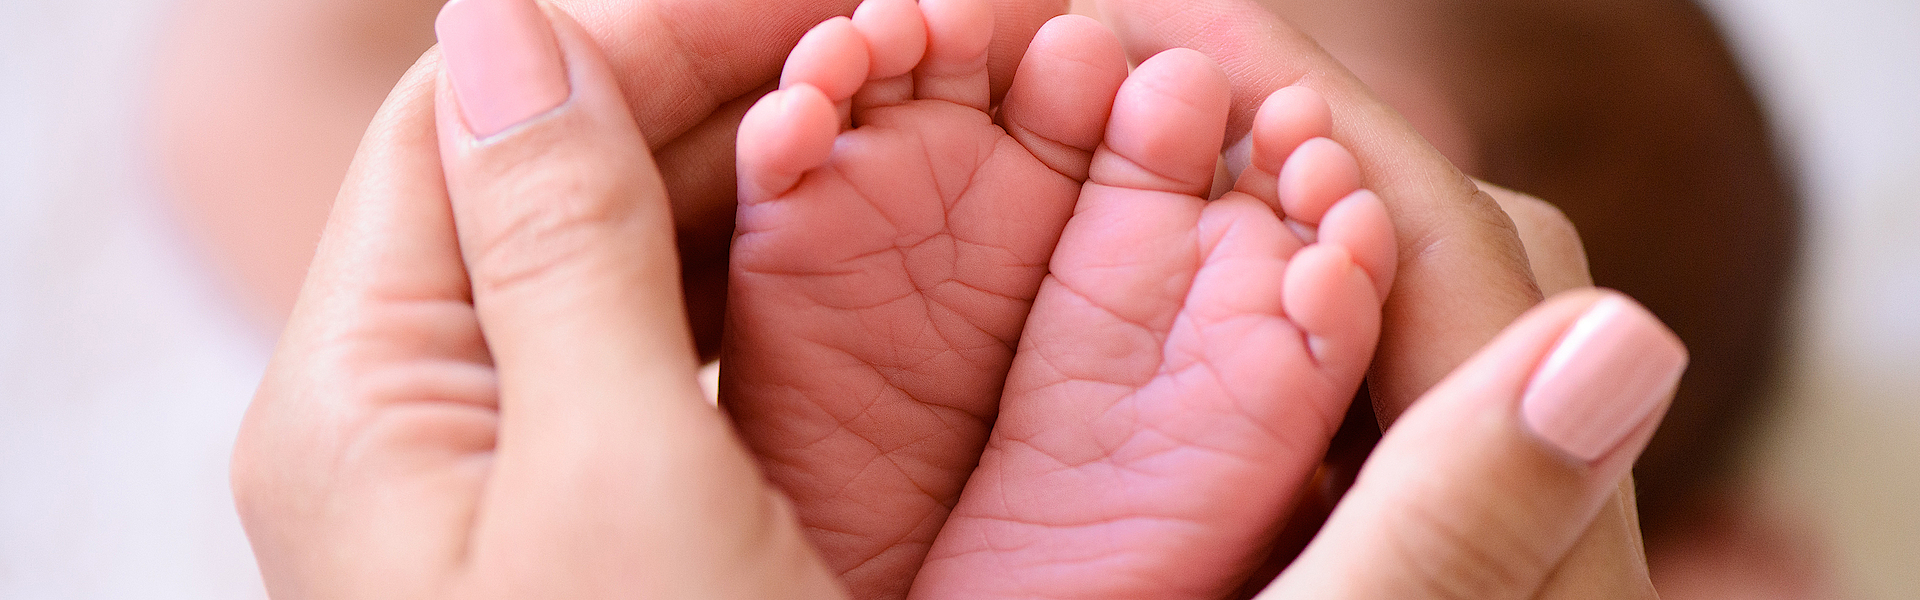 Hände umfassen die kleinen Füße von einem Baby.